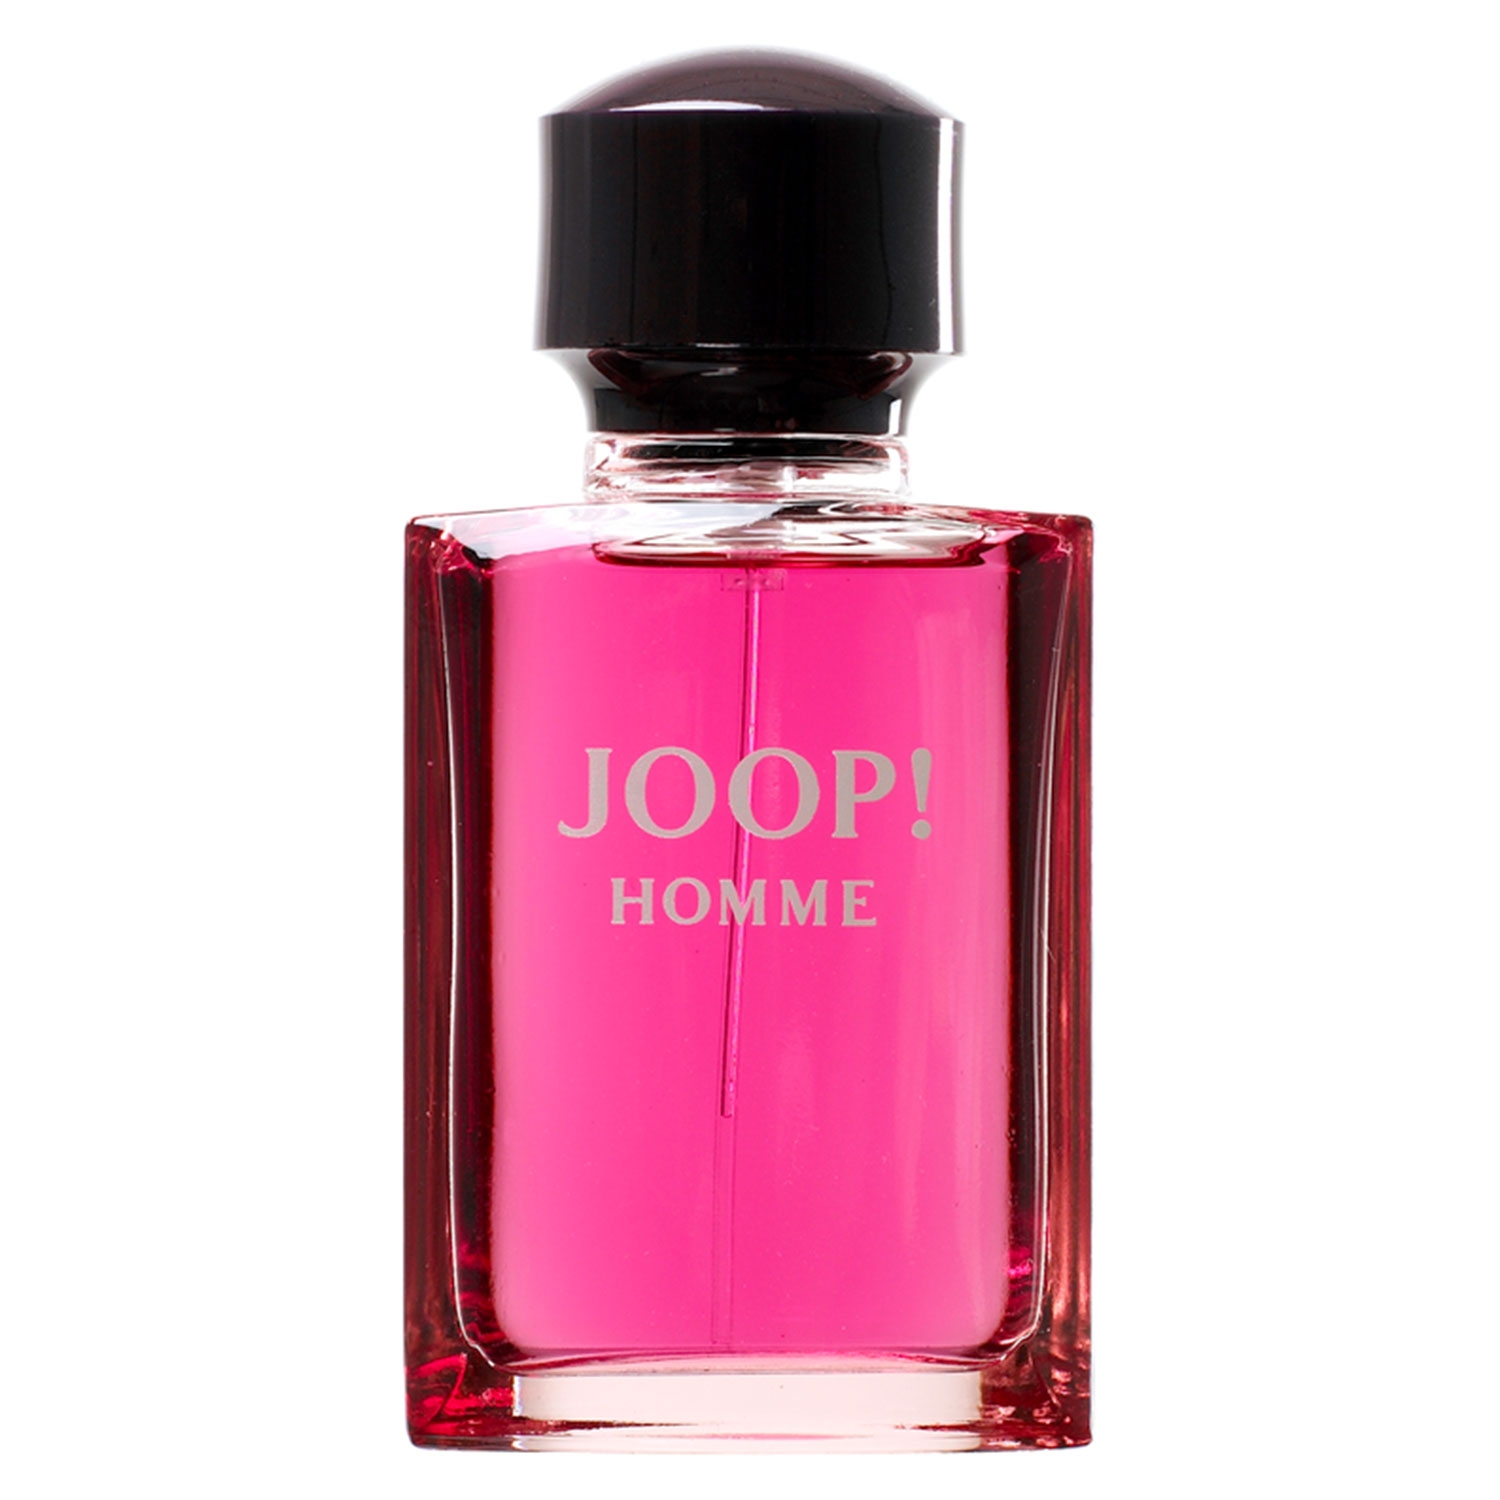 Product image from Joop! Homme - Eau de Toilette